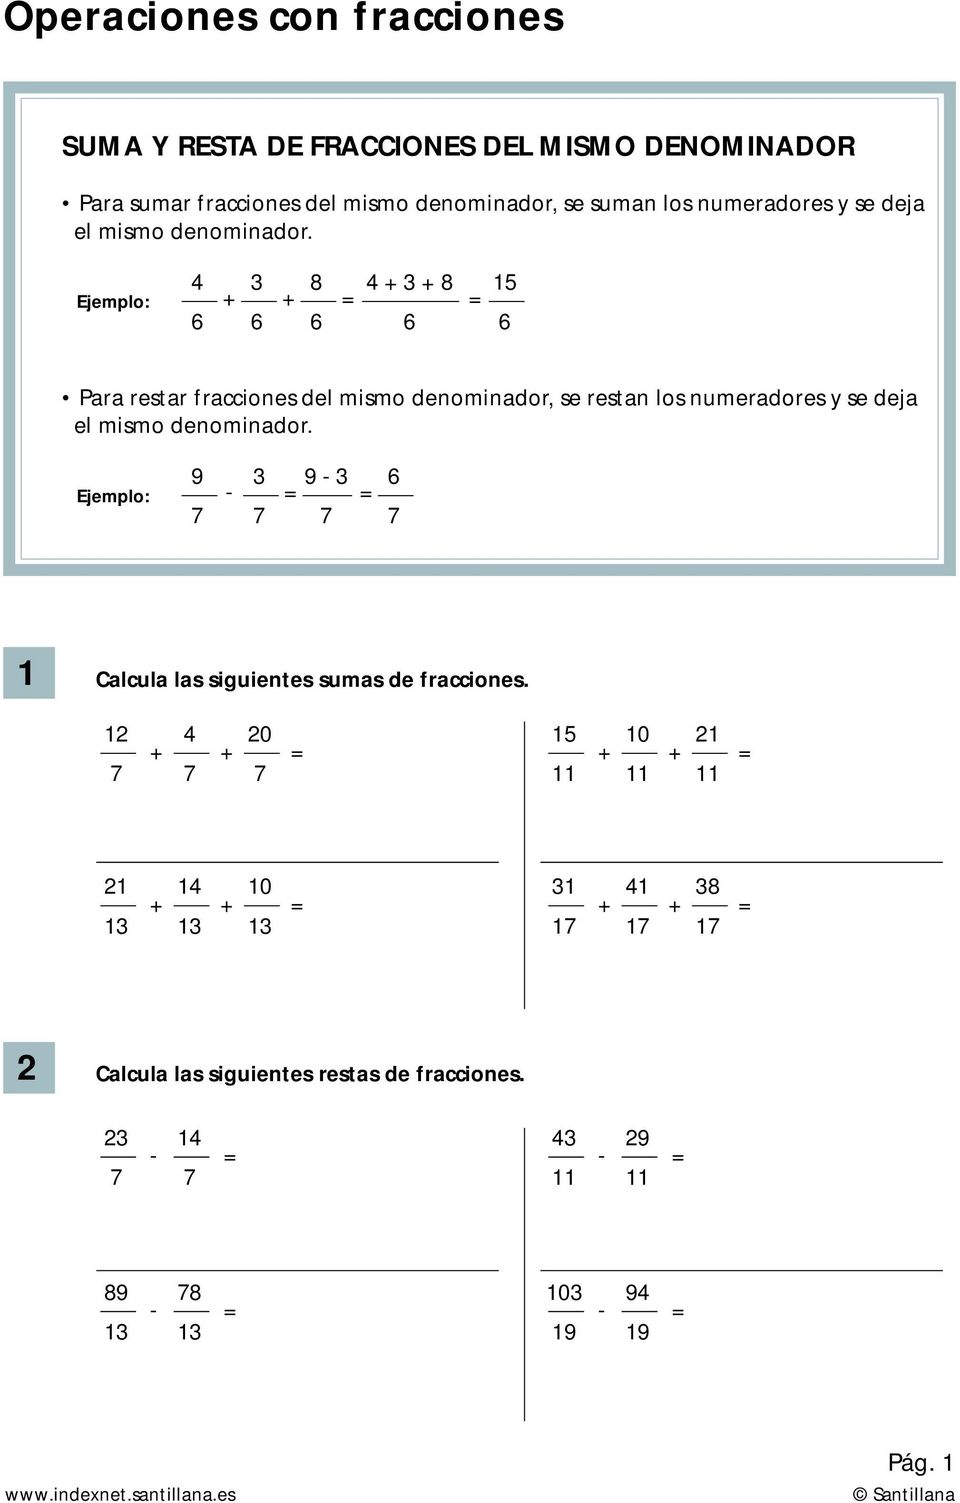 Para restar fracciones del mismo denominador se restan los numeradores se deja el mismo denominador.